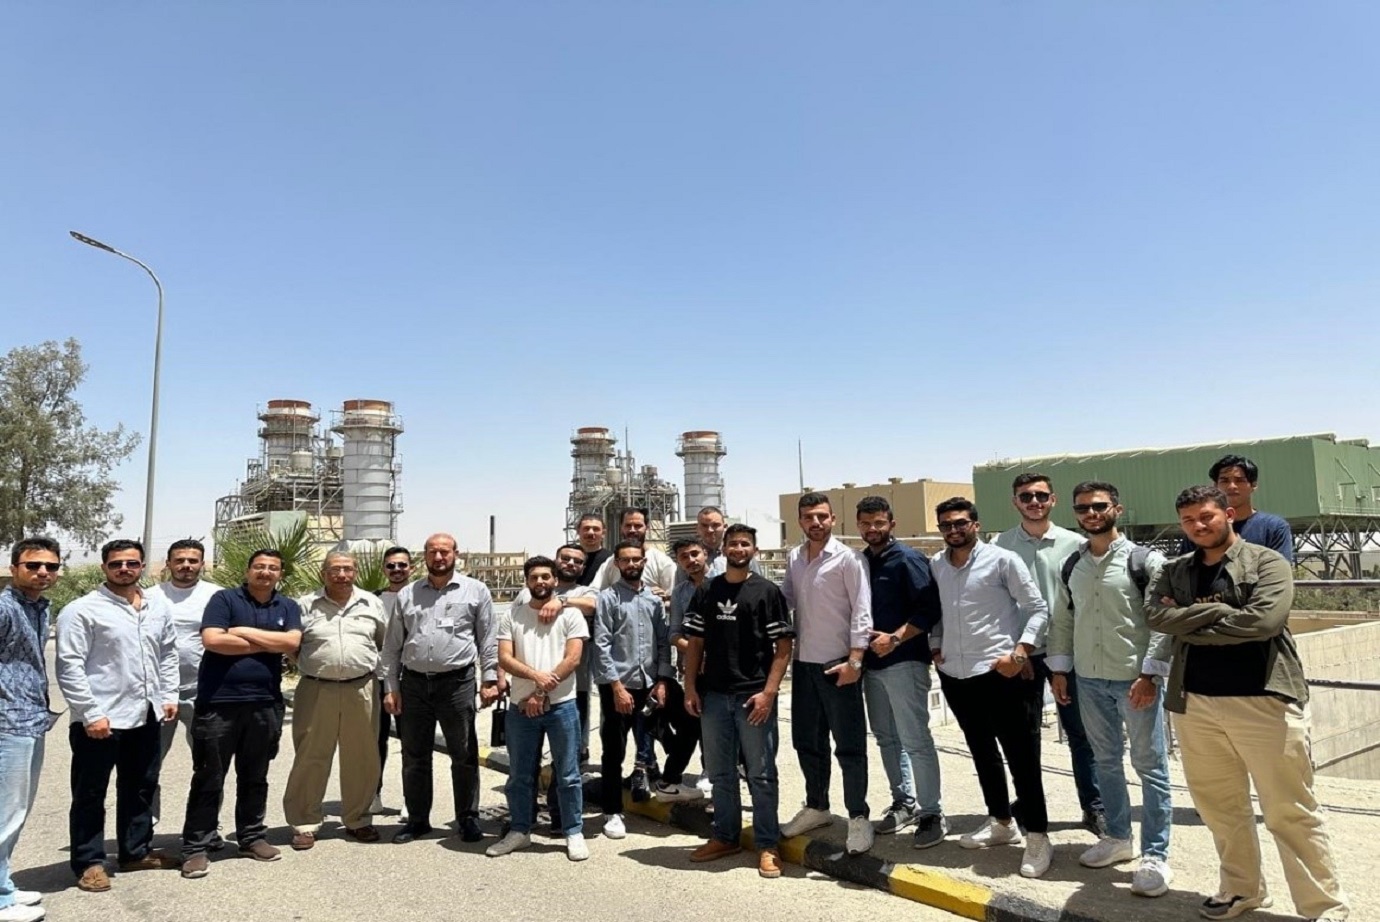 قسم هندسة الطاقة المتجددة في "عمان العربية" يقوم برحلة علمية الى شركة السمرا لتوليد الكهرباء1